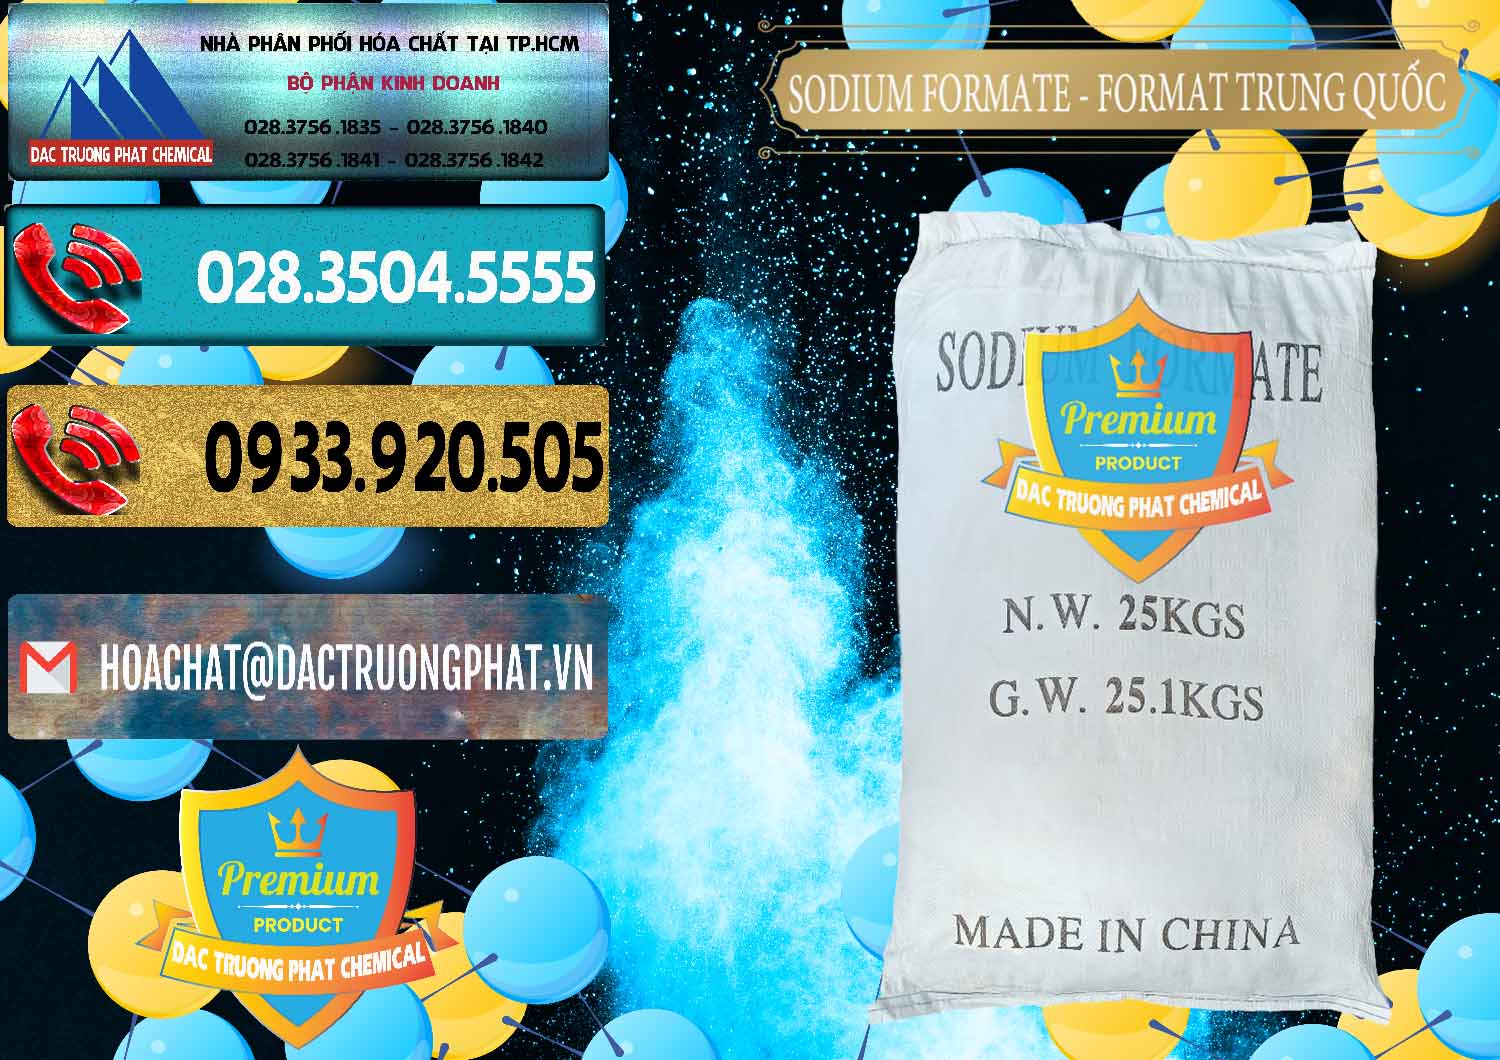 Đơn vị chuyên phân phối _ bán Sodium Formate - Natri Format Trung Quốc China - 0142 - Công ty phân phối _ cung ứng hóa chất tại TP.HCM - hoachatdetnhuom.com